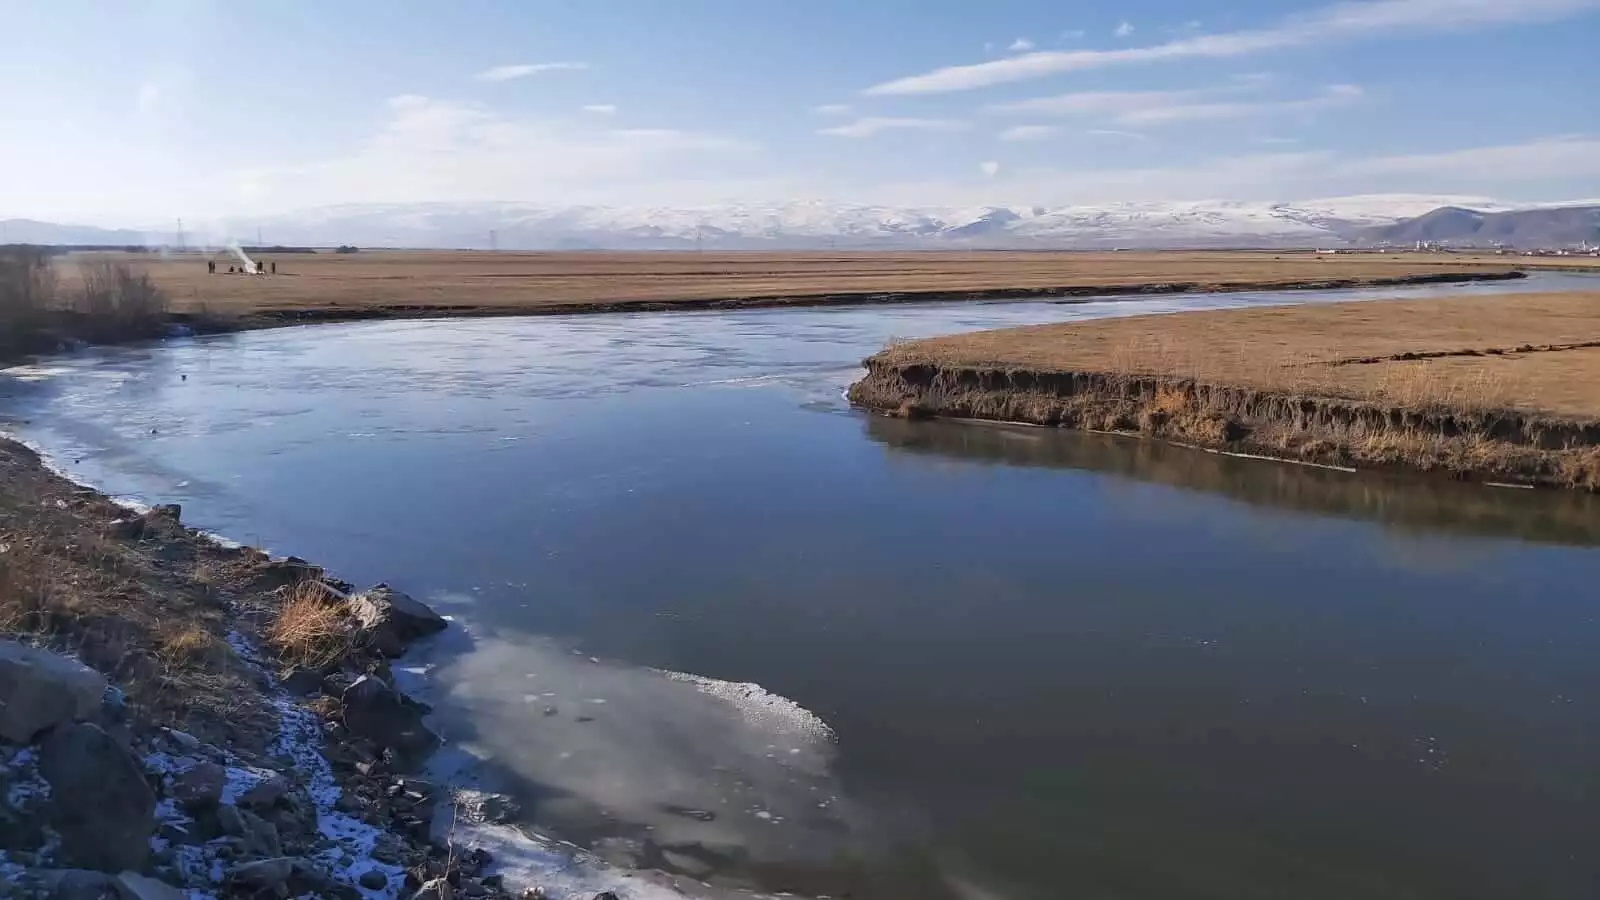 Kura nehri'nin üzerine taş atarak buzun kalınlığını test etti.